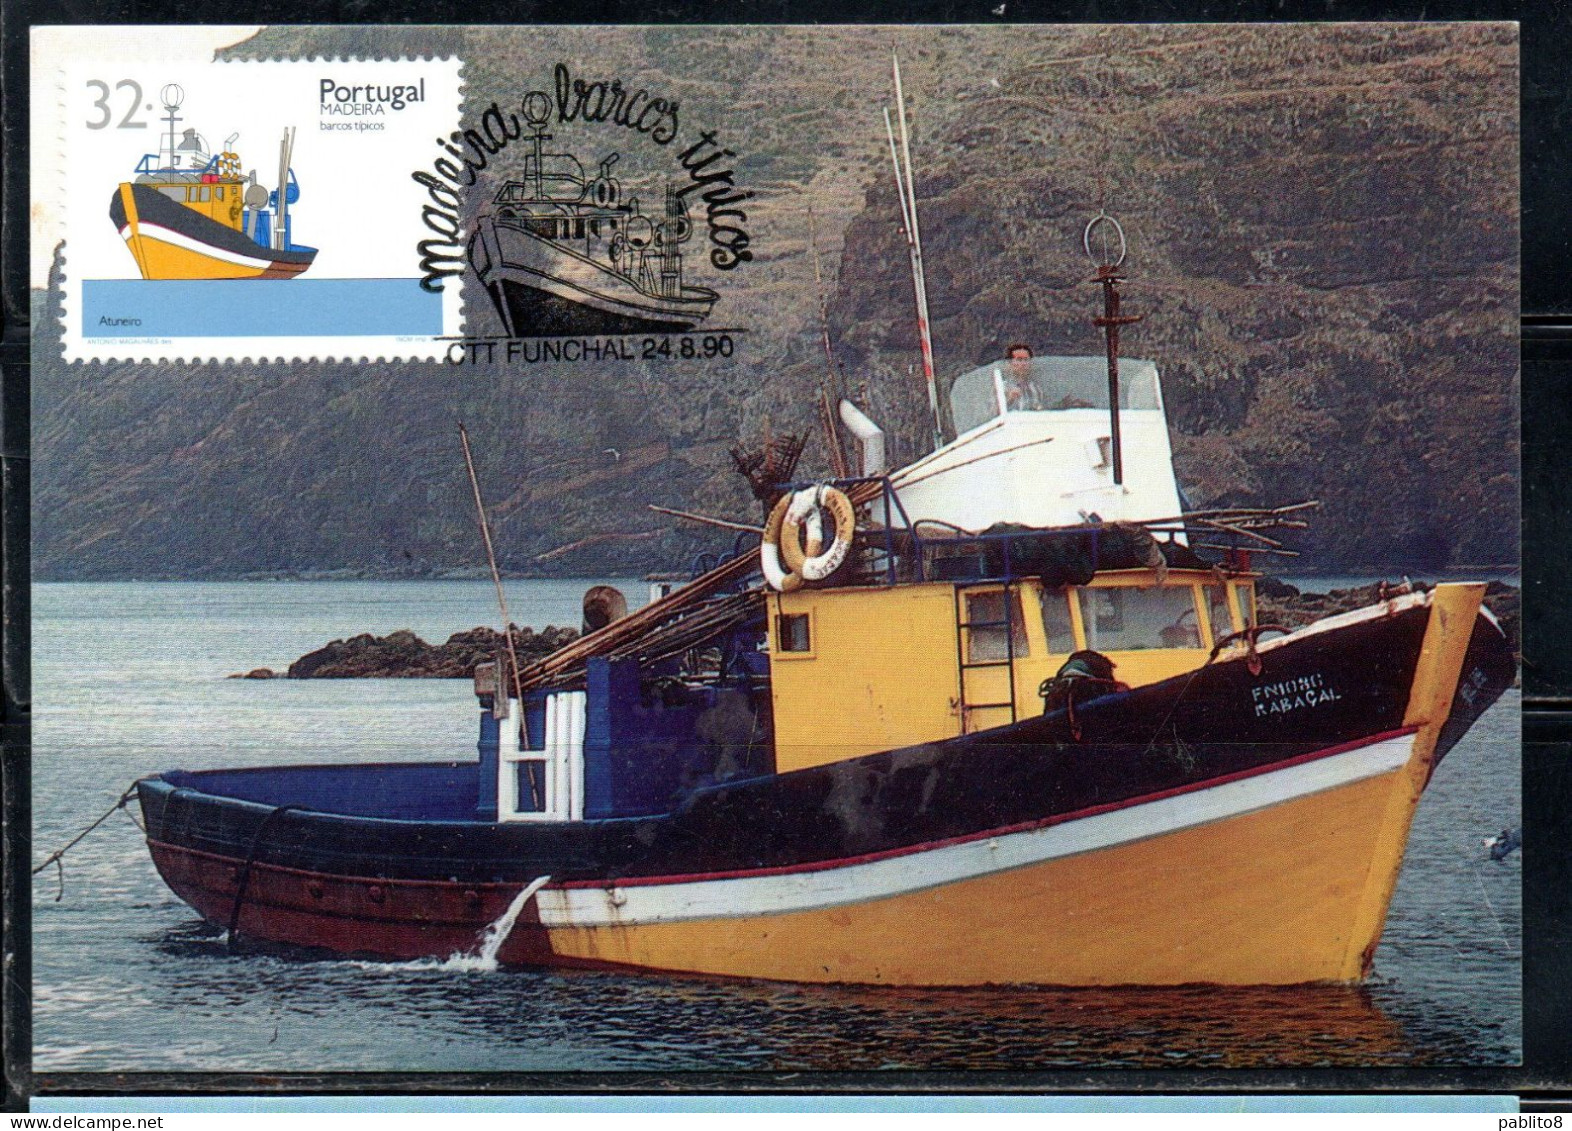 MADERA MADEIRA 1990 BOATS OF TUNA SHIP 32e MAXI MAXIMUM CARD CARTE - Madeira